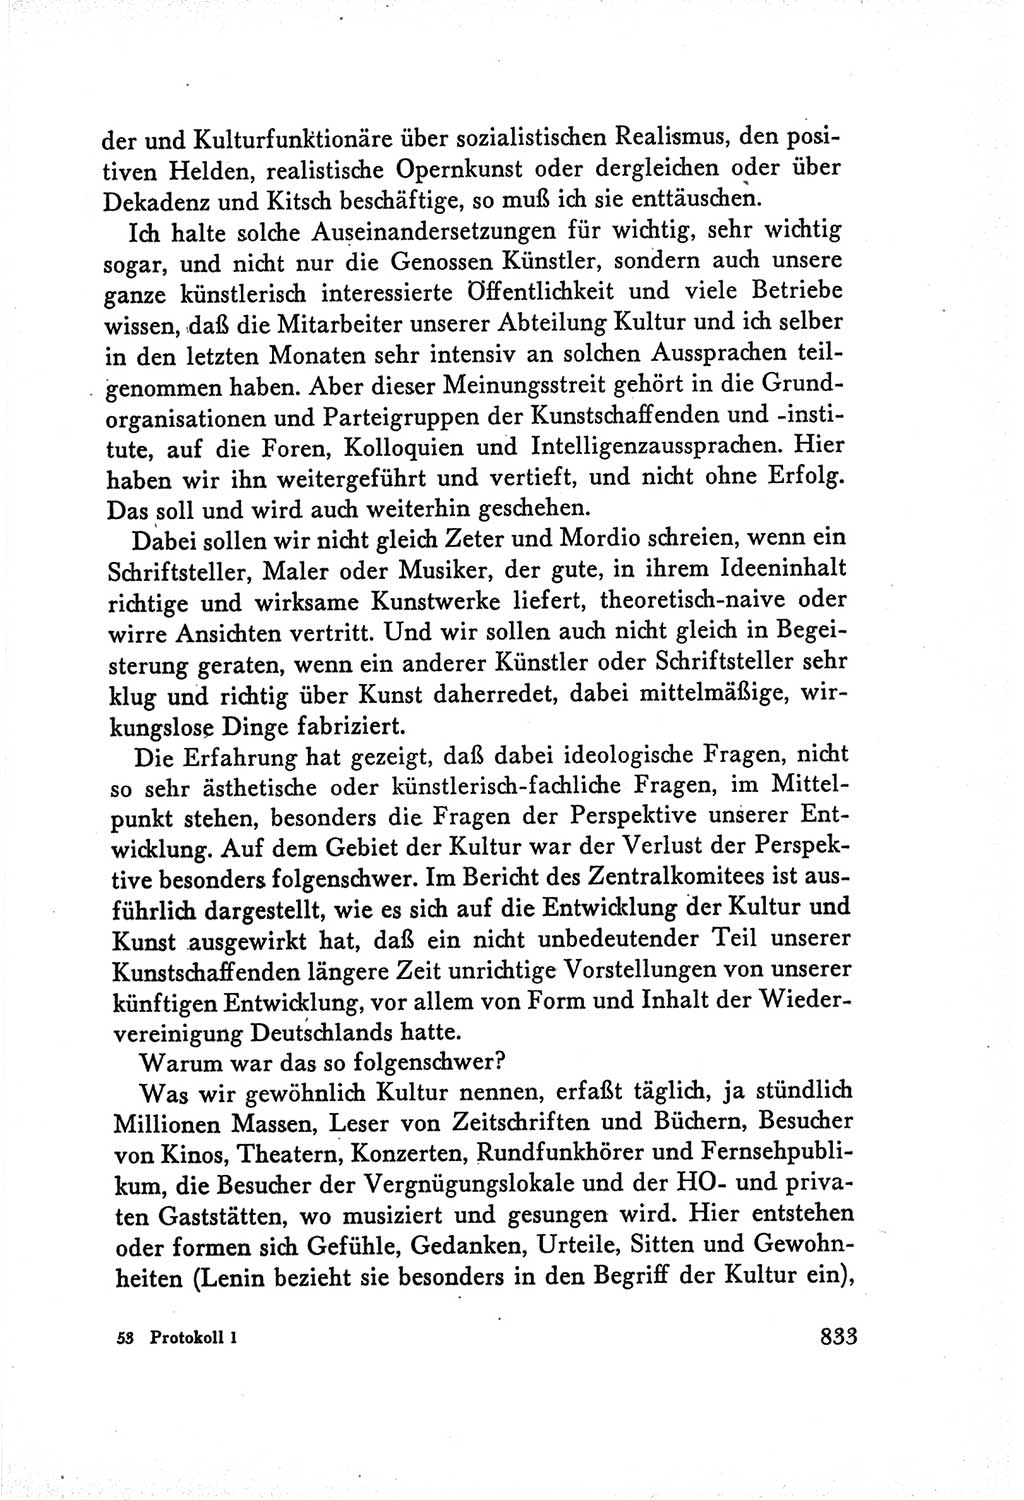 Protokoll der Verhandlungen des Ⅴ. Parteitages der Sozialistischen Einheitspartei Deutschlands (SED) [Deutsche Demokratische Republik (DDR)] 1958, Seite 833